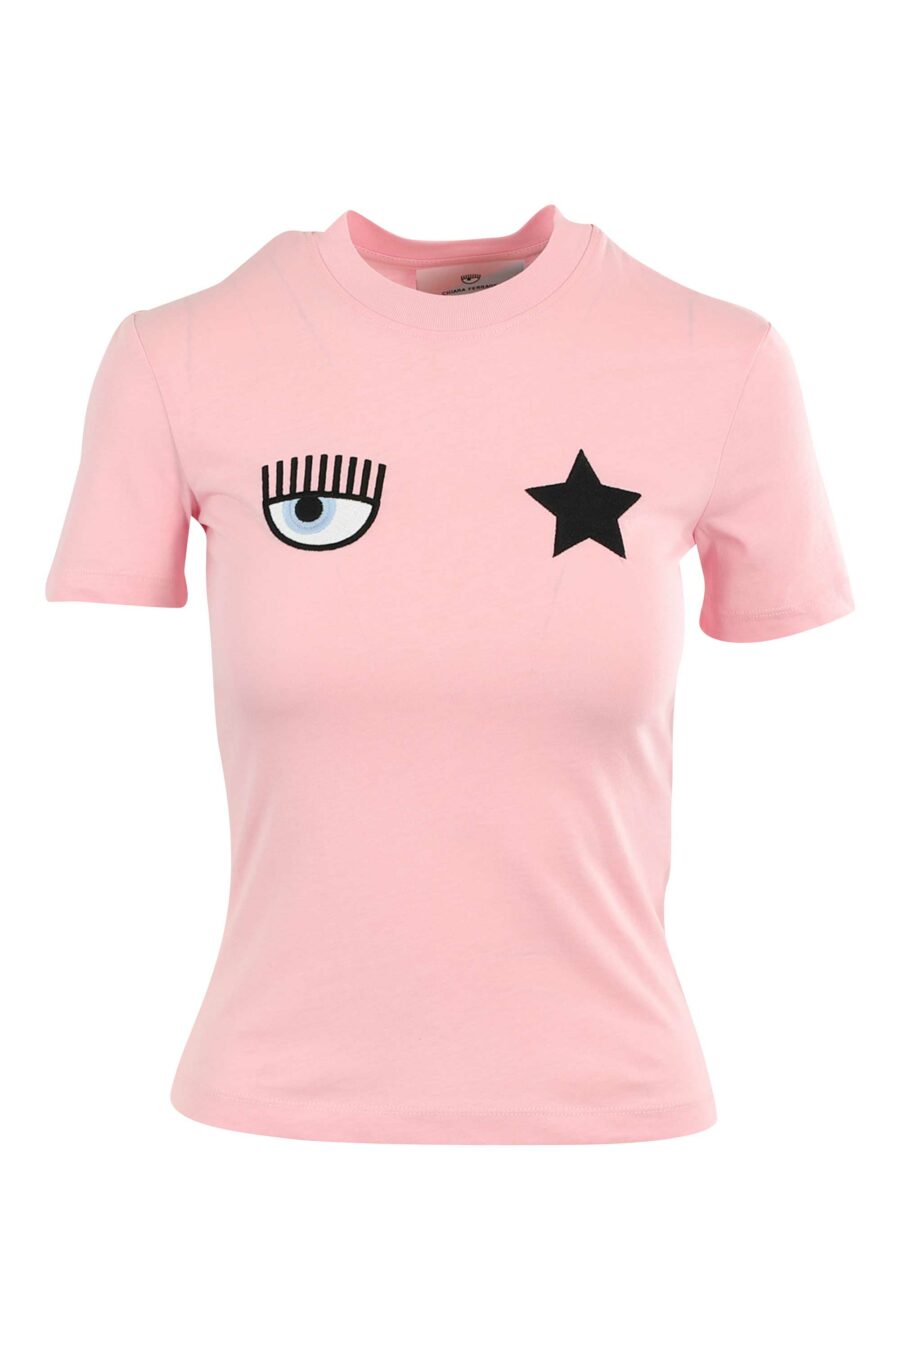 T-shirt cor-de-rosa com olho e estrela - 8052672416841